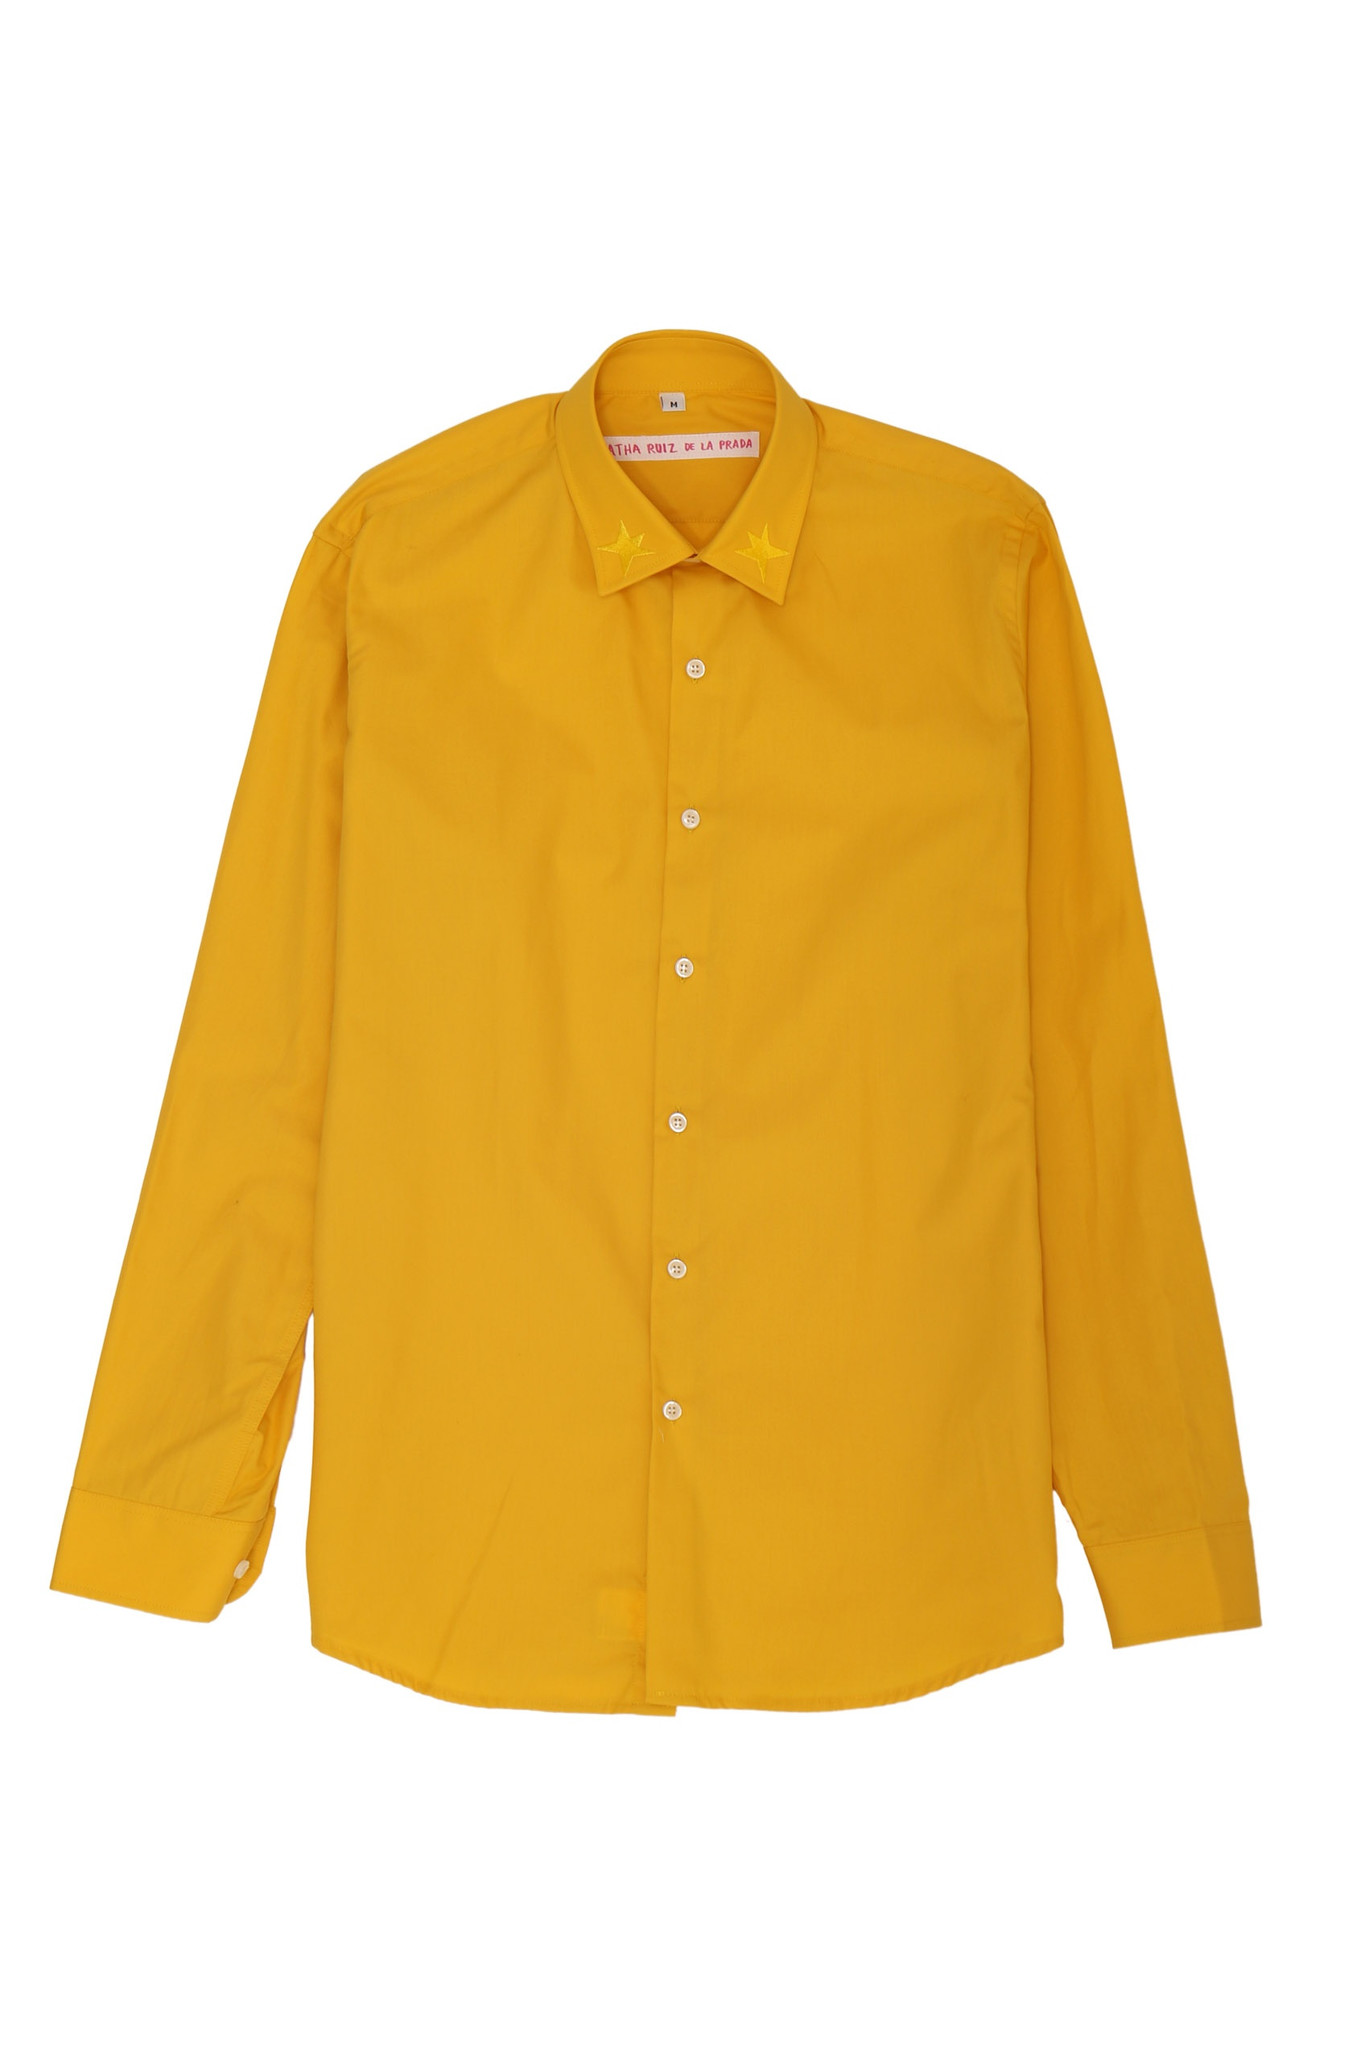 Combiné de 25 chemises + 50 sous-chemises jaunes